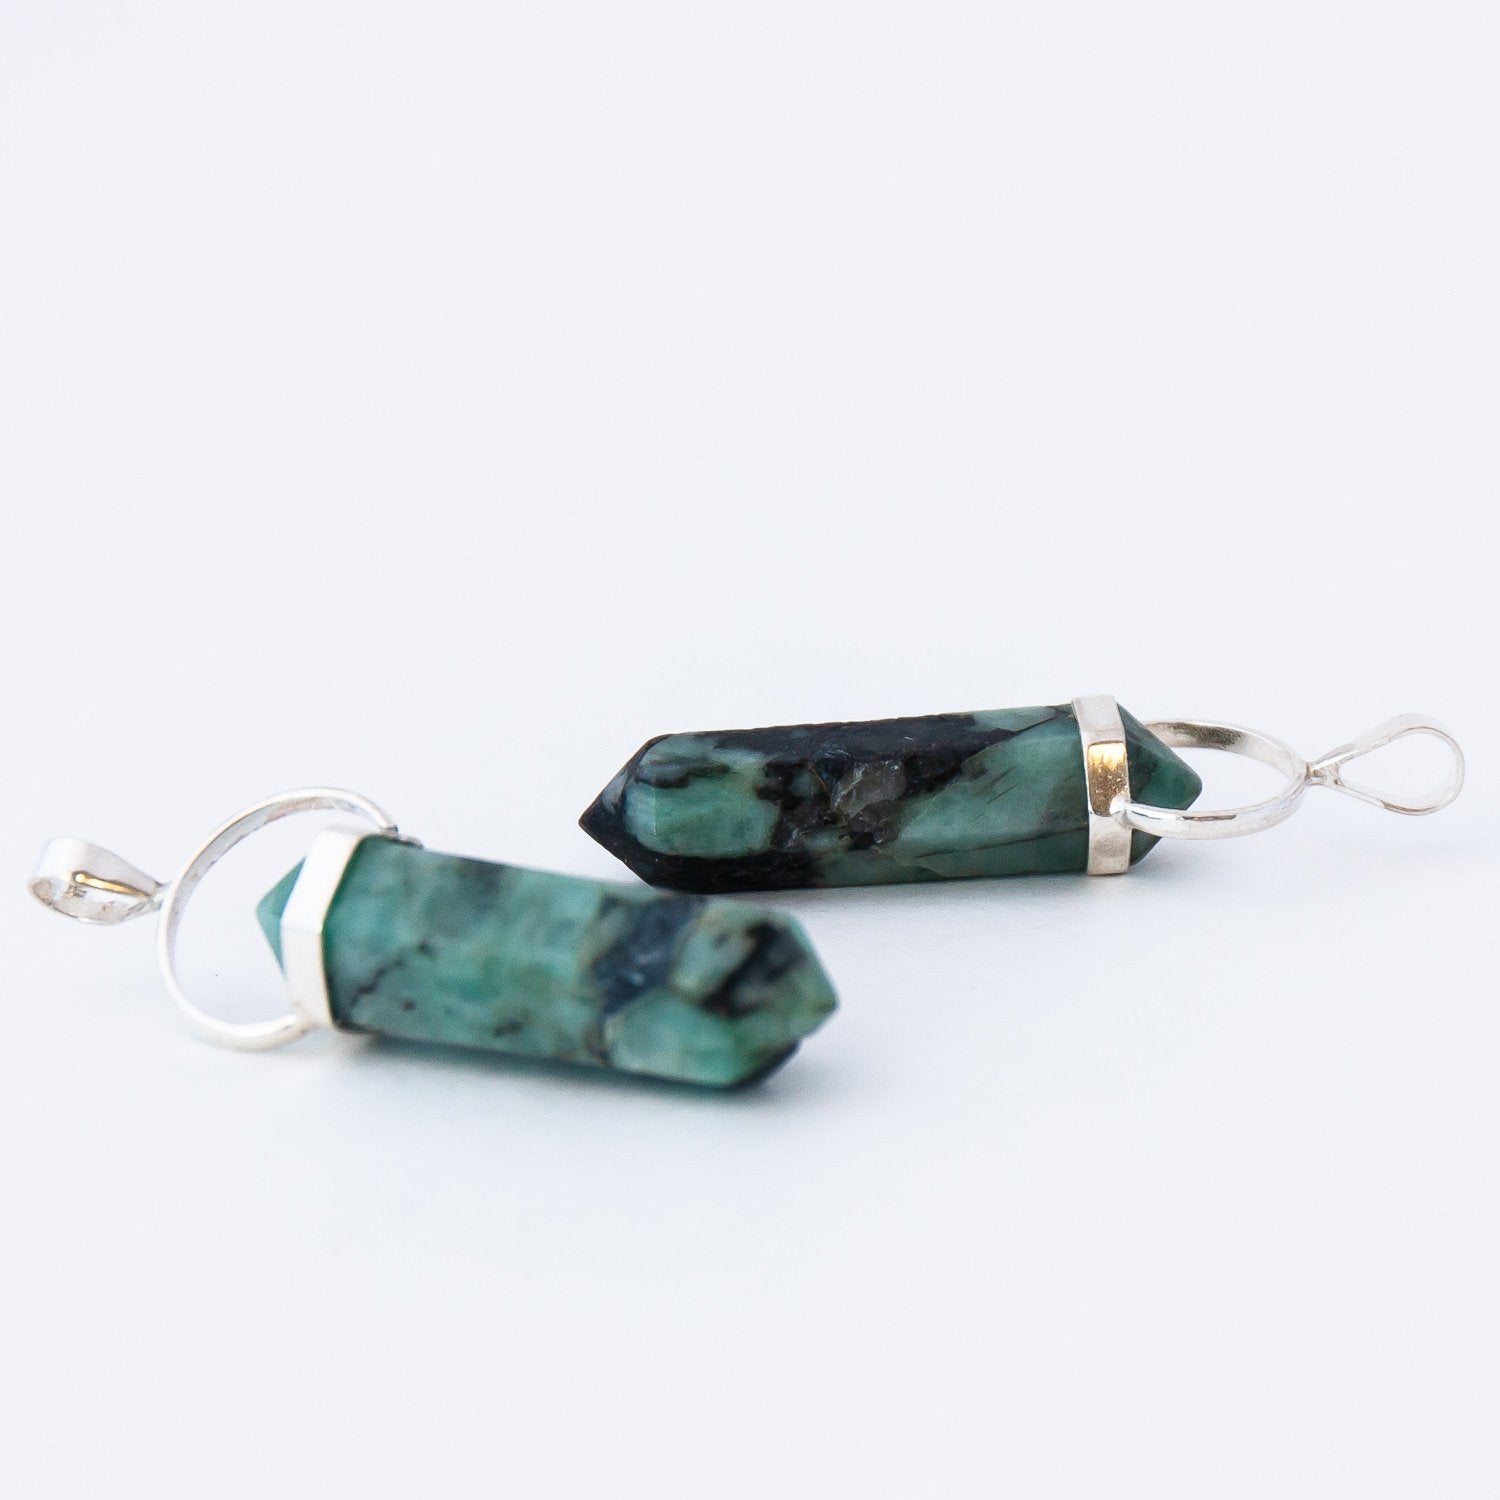 Two Emerald Crystal Pendants.